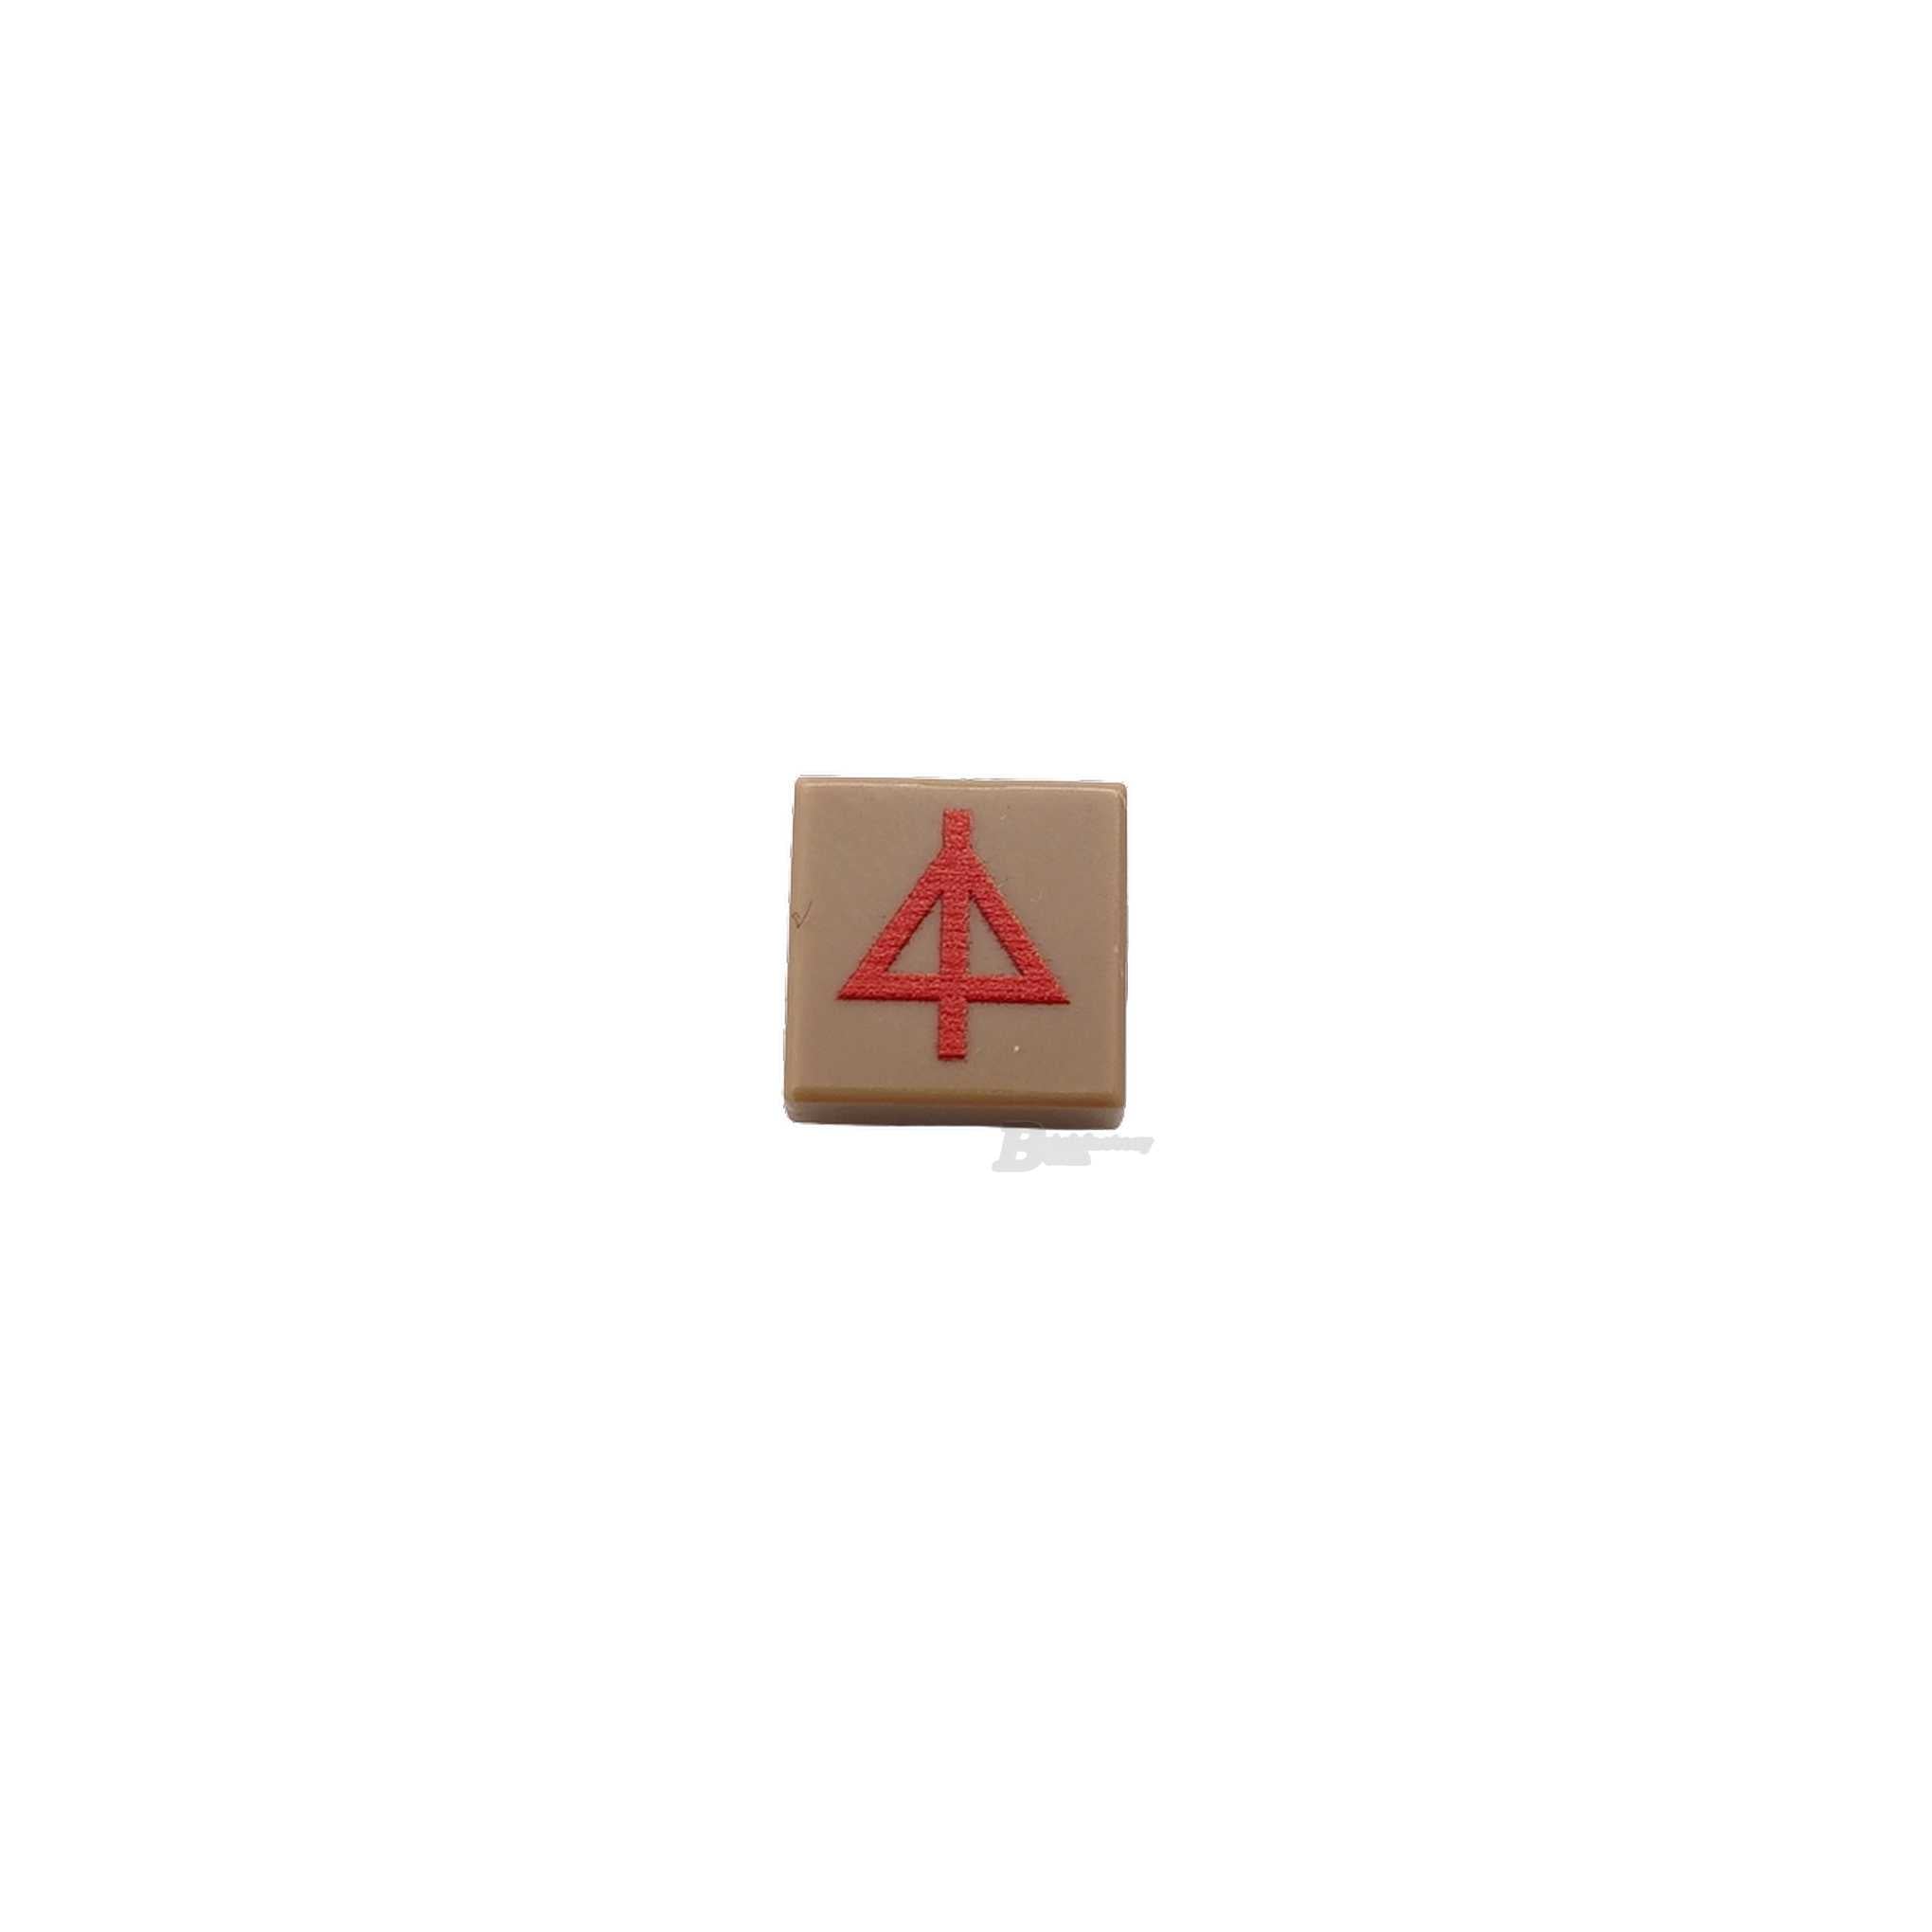 BF-0633 - Divisionsabzeichen 15. Pz. Division (Farbe: dark-tan) Bedruckte-LEGO®-Fliese-1x1